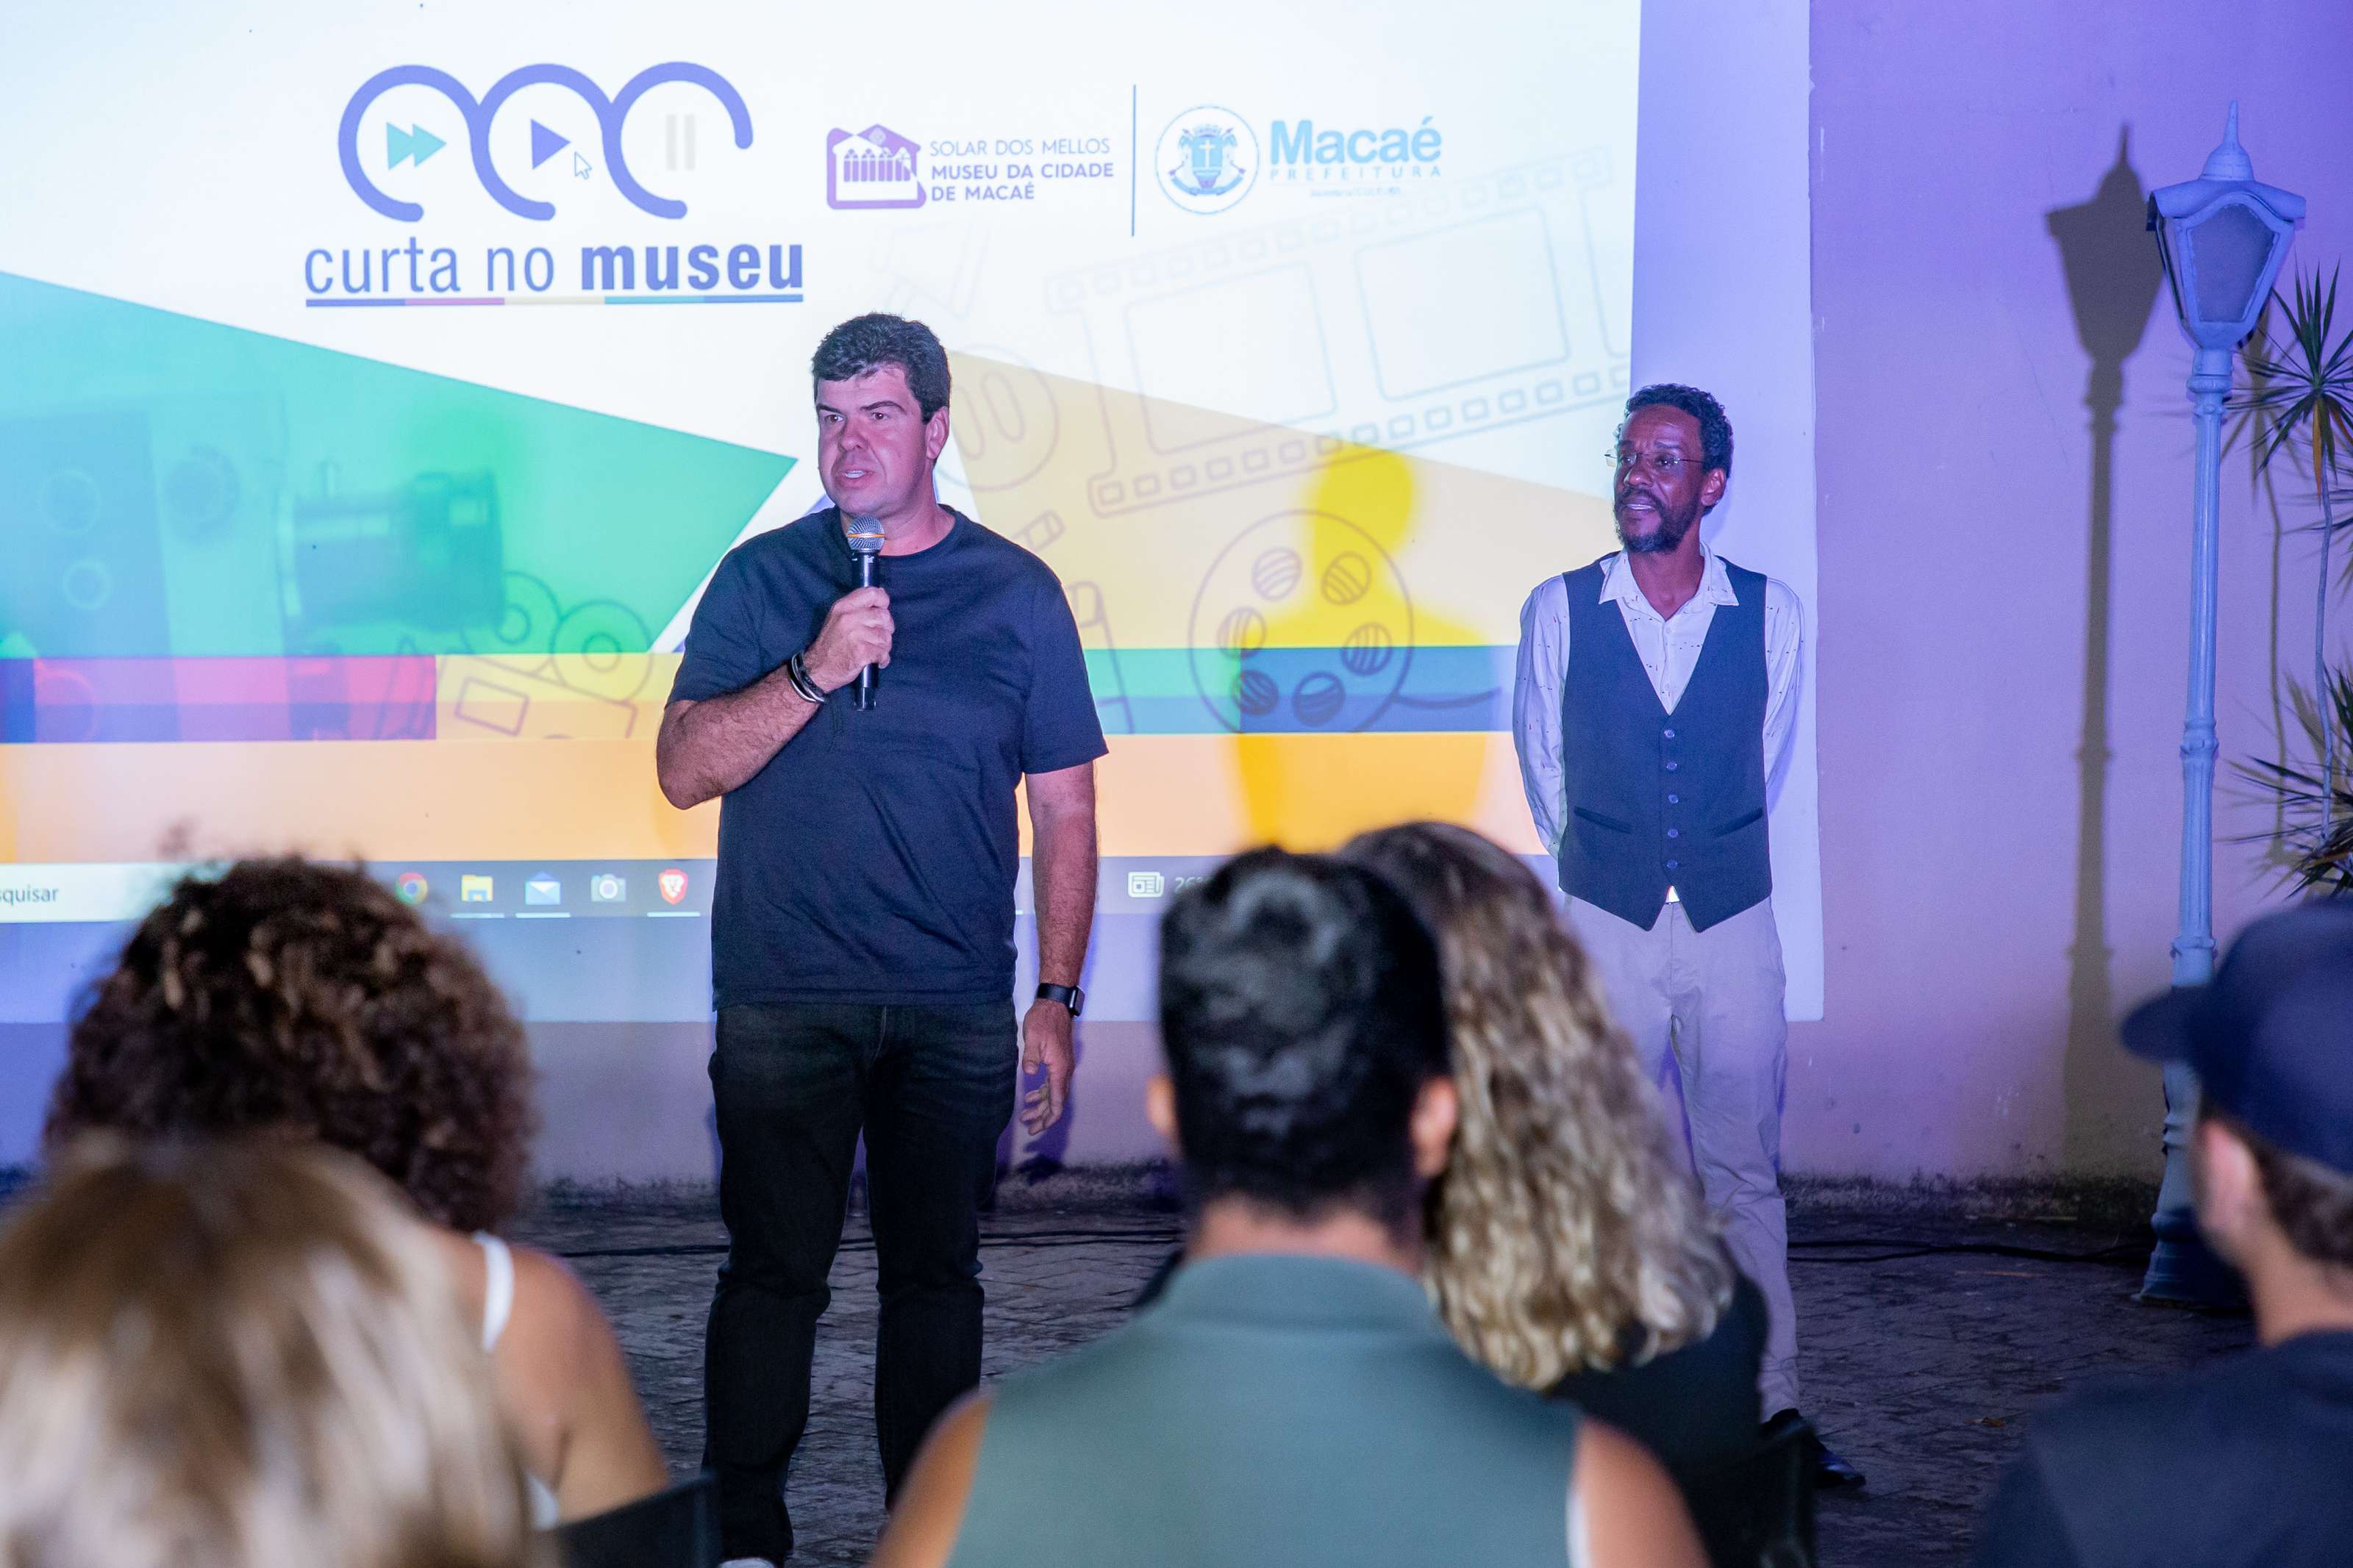  Museu da Cidade de Macaé contou com a presença do prefeito Welberth Rezende e do secretário de Cultura, Leandro Mussi.